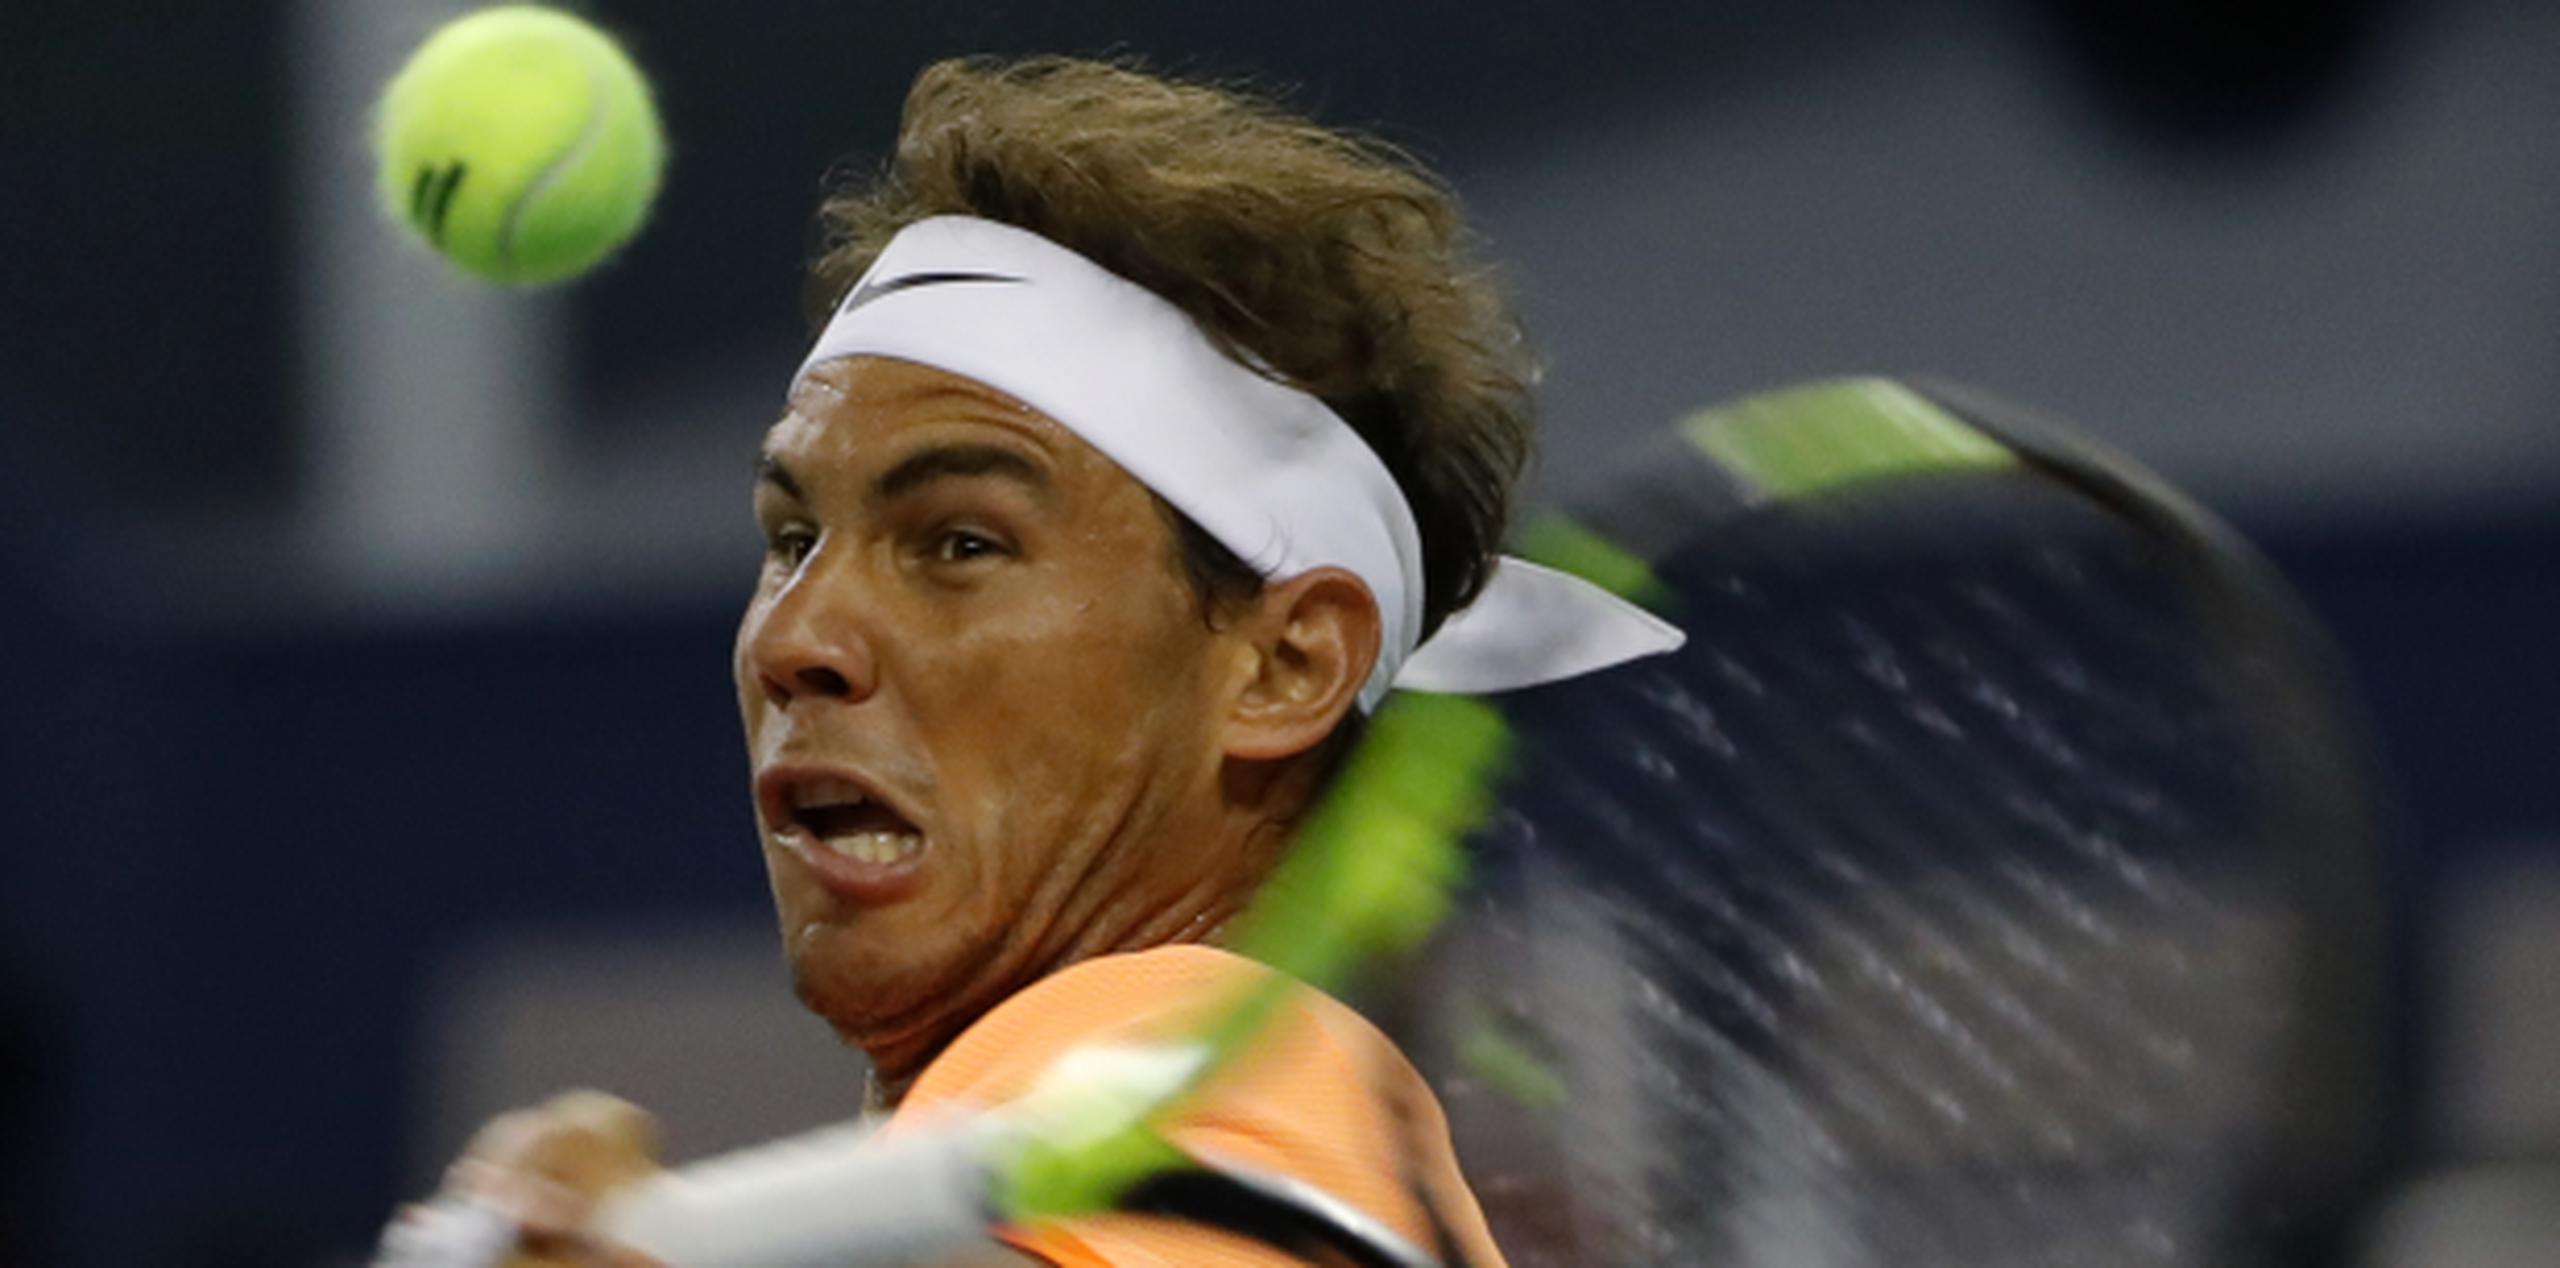 Rafael Nadal en acción en el partido que perdió frente al serbio Viktor Troicki, en el Masters de Shanghai. (AP/Andy Wong)
